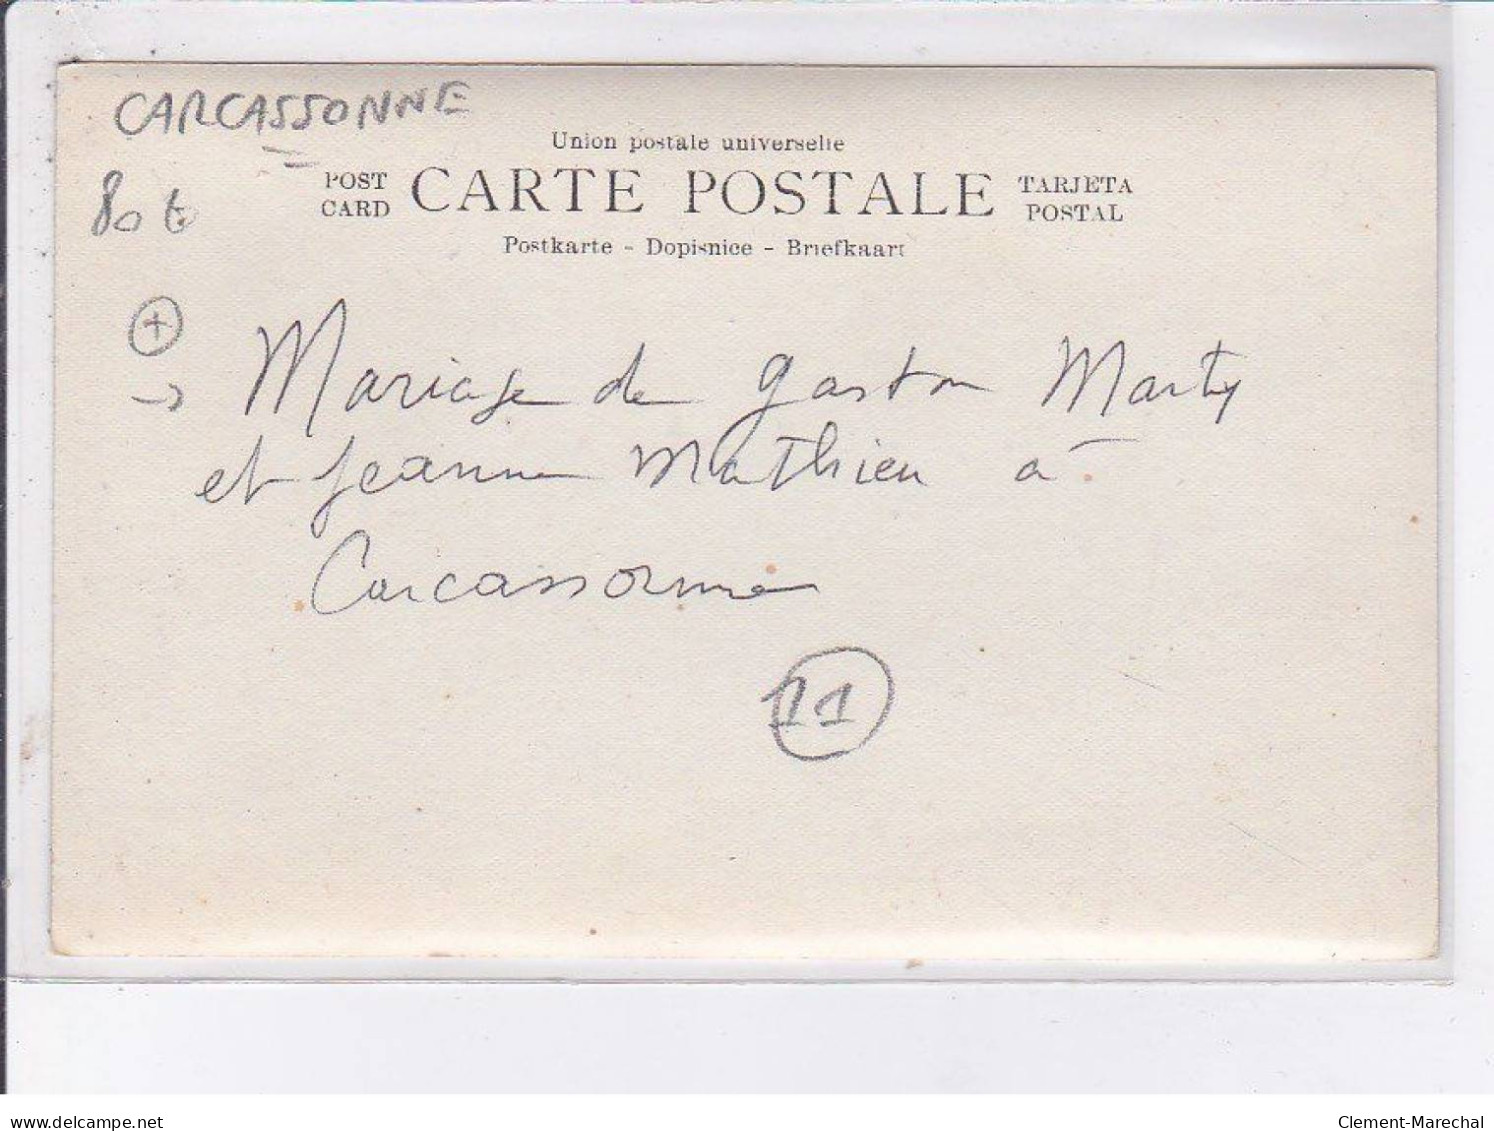 CARCASSONNE: Mariage De Gaston Marty Et Jeanne Mathieu - Très Bon état - Carcassonne